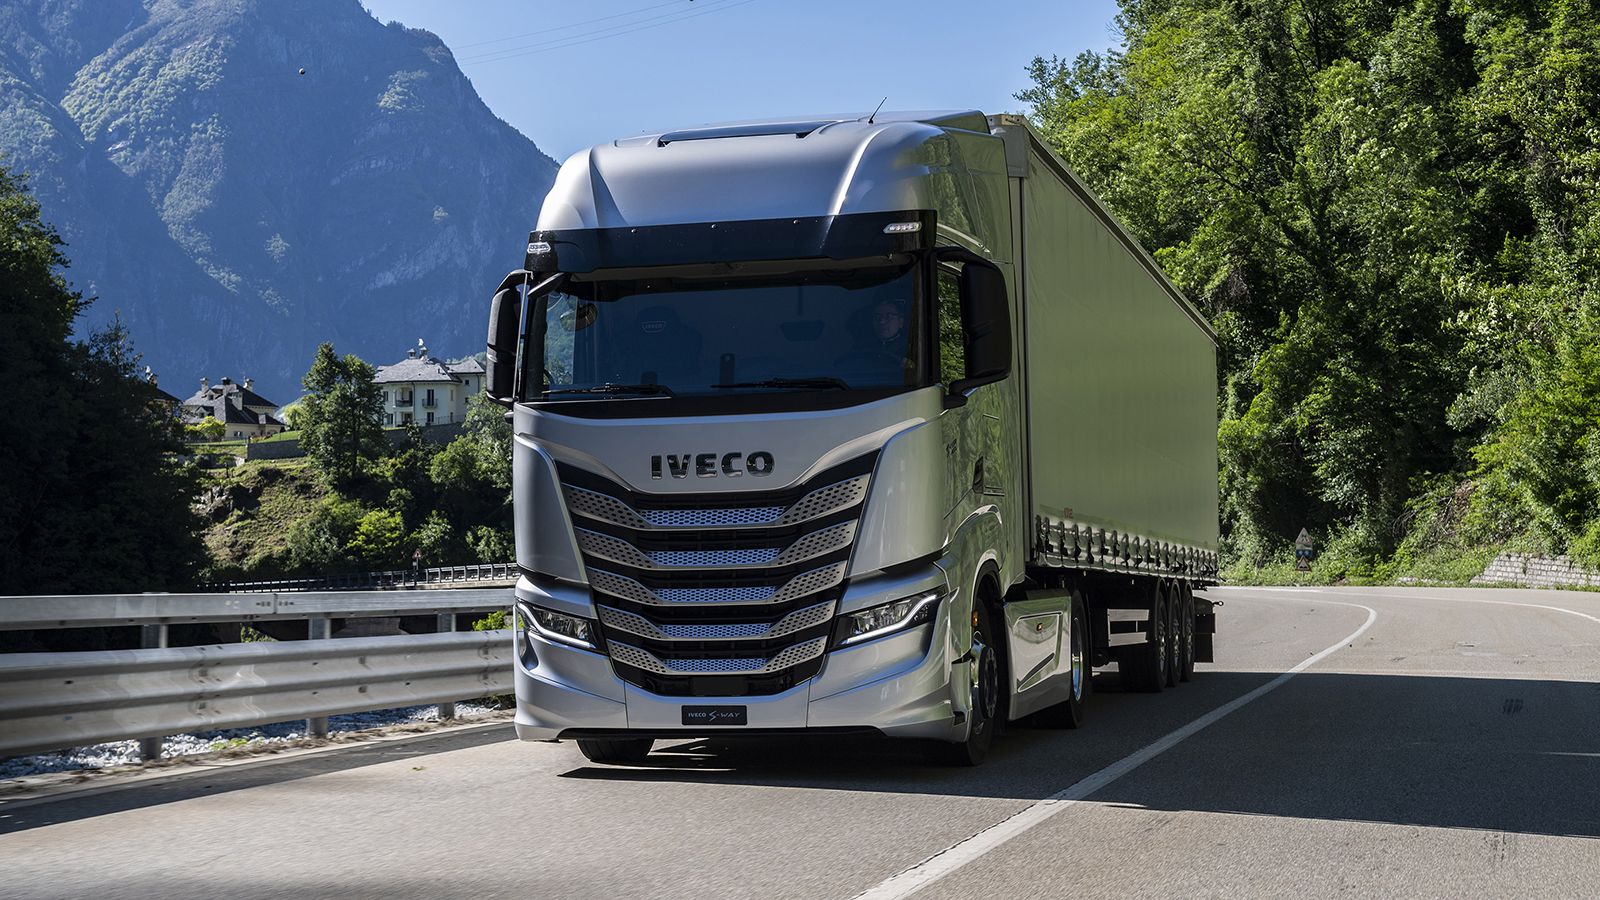 Tο φορτηγό μεγάλων αποστάσεων υπόσχεται περιορισμό της κατανάλωσής του έως και κατά 3%, χάρη στη νέα γκάμα κινητήρων που πληρούν τα αντιρρυπαντικά πρότυπα Euro VI/E και οι οποίοι φέρουν έγκριση για να